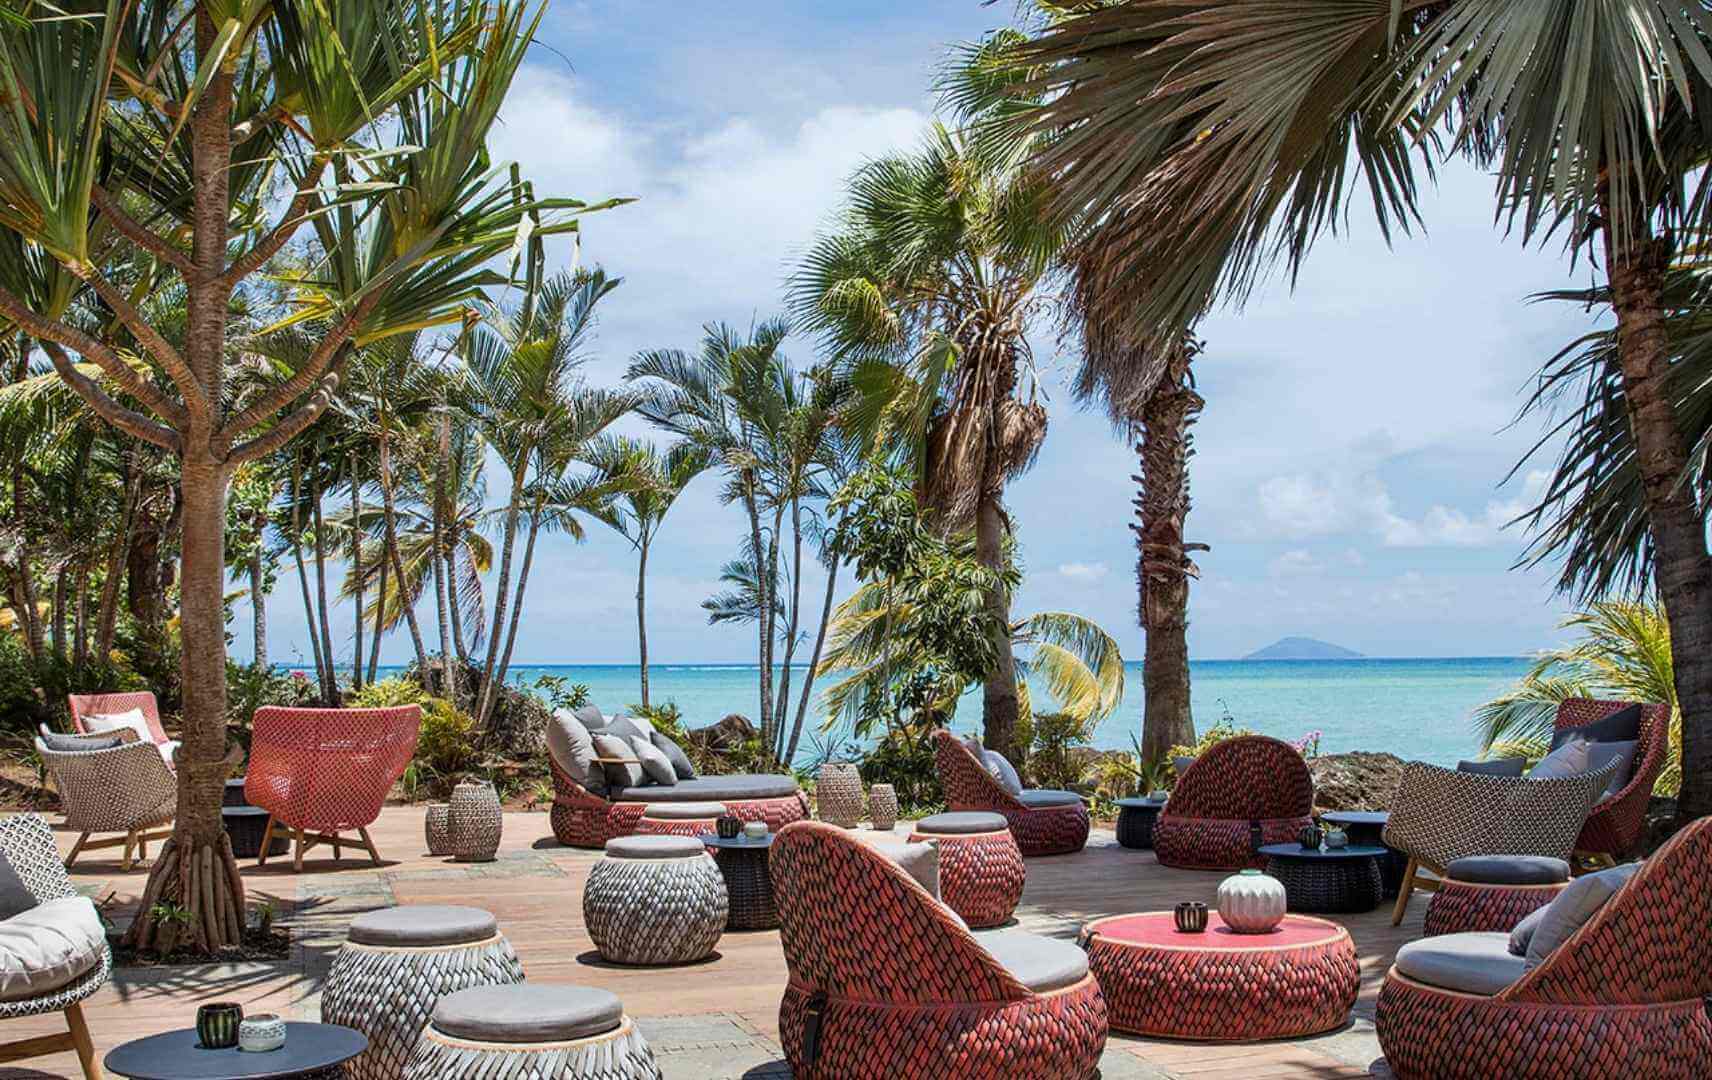 Terrasse mit Palmen und Meerblick des LUX* Grand Gaube Resort & Villas auf Mauritius